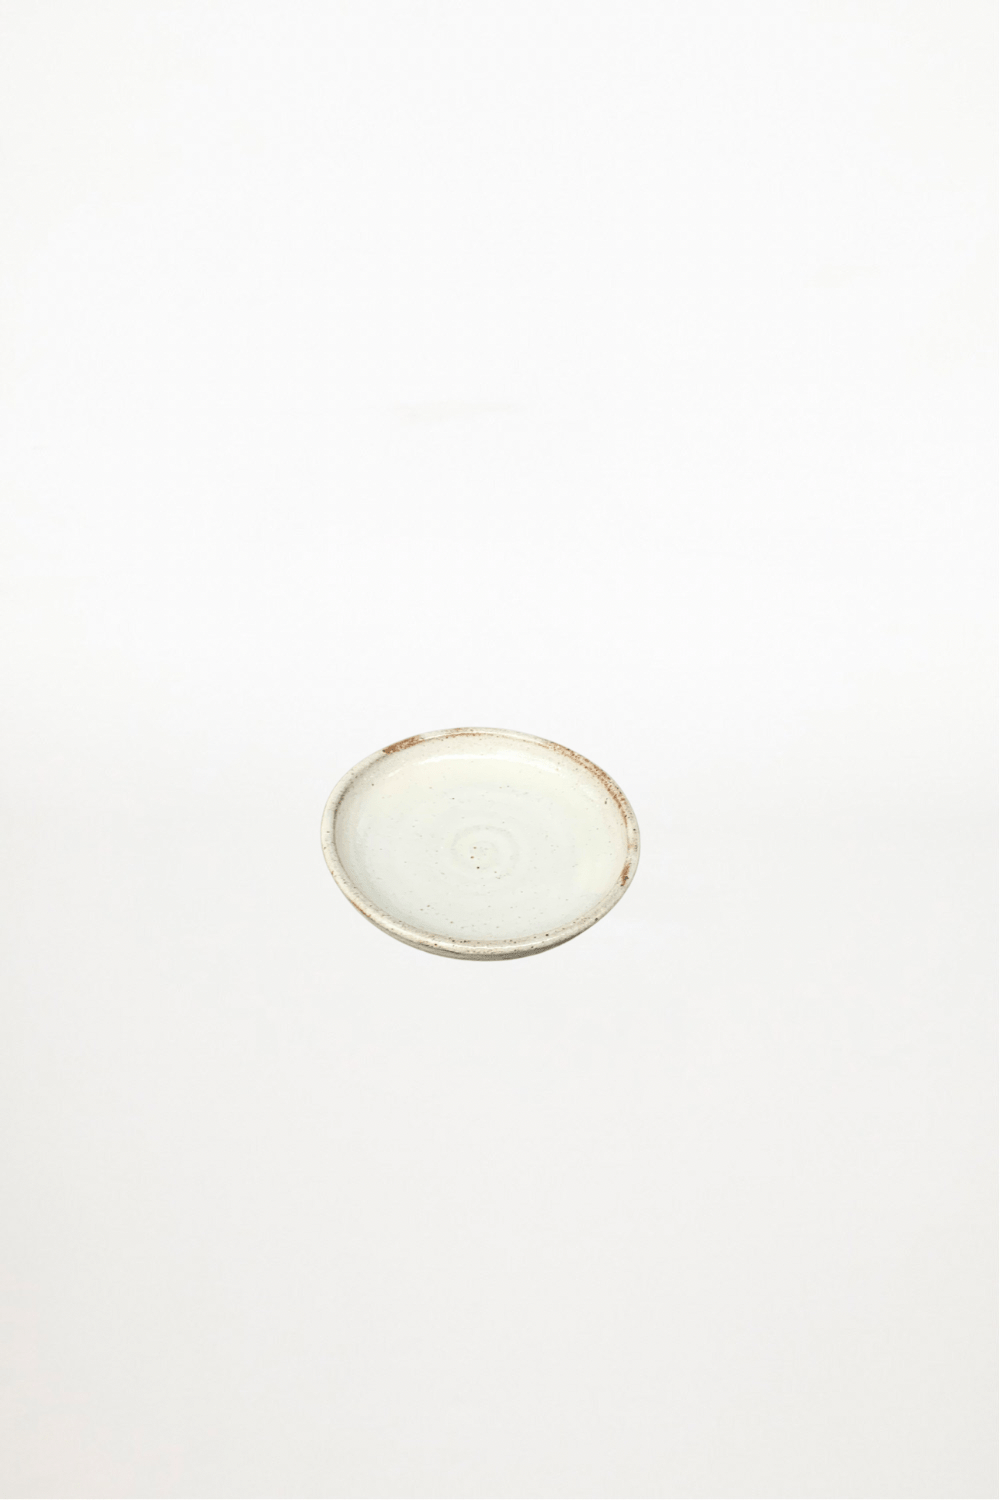 Bennetts Pottery - Little Plate - Cream - Ensemble Studios